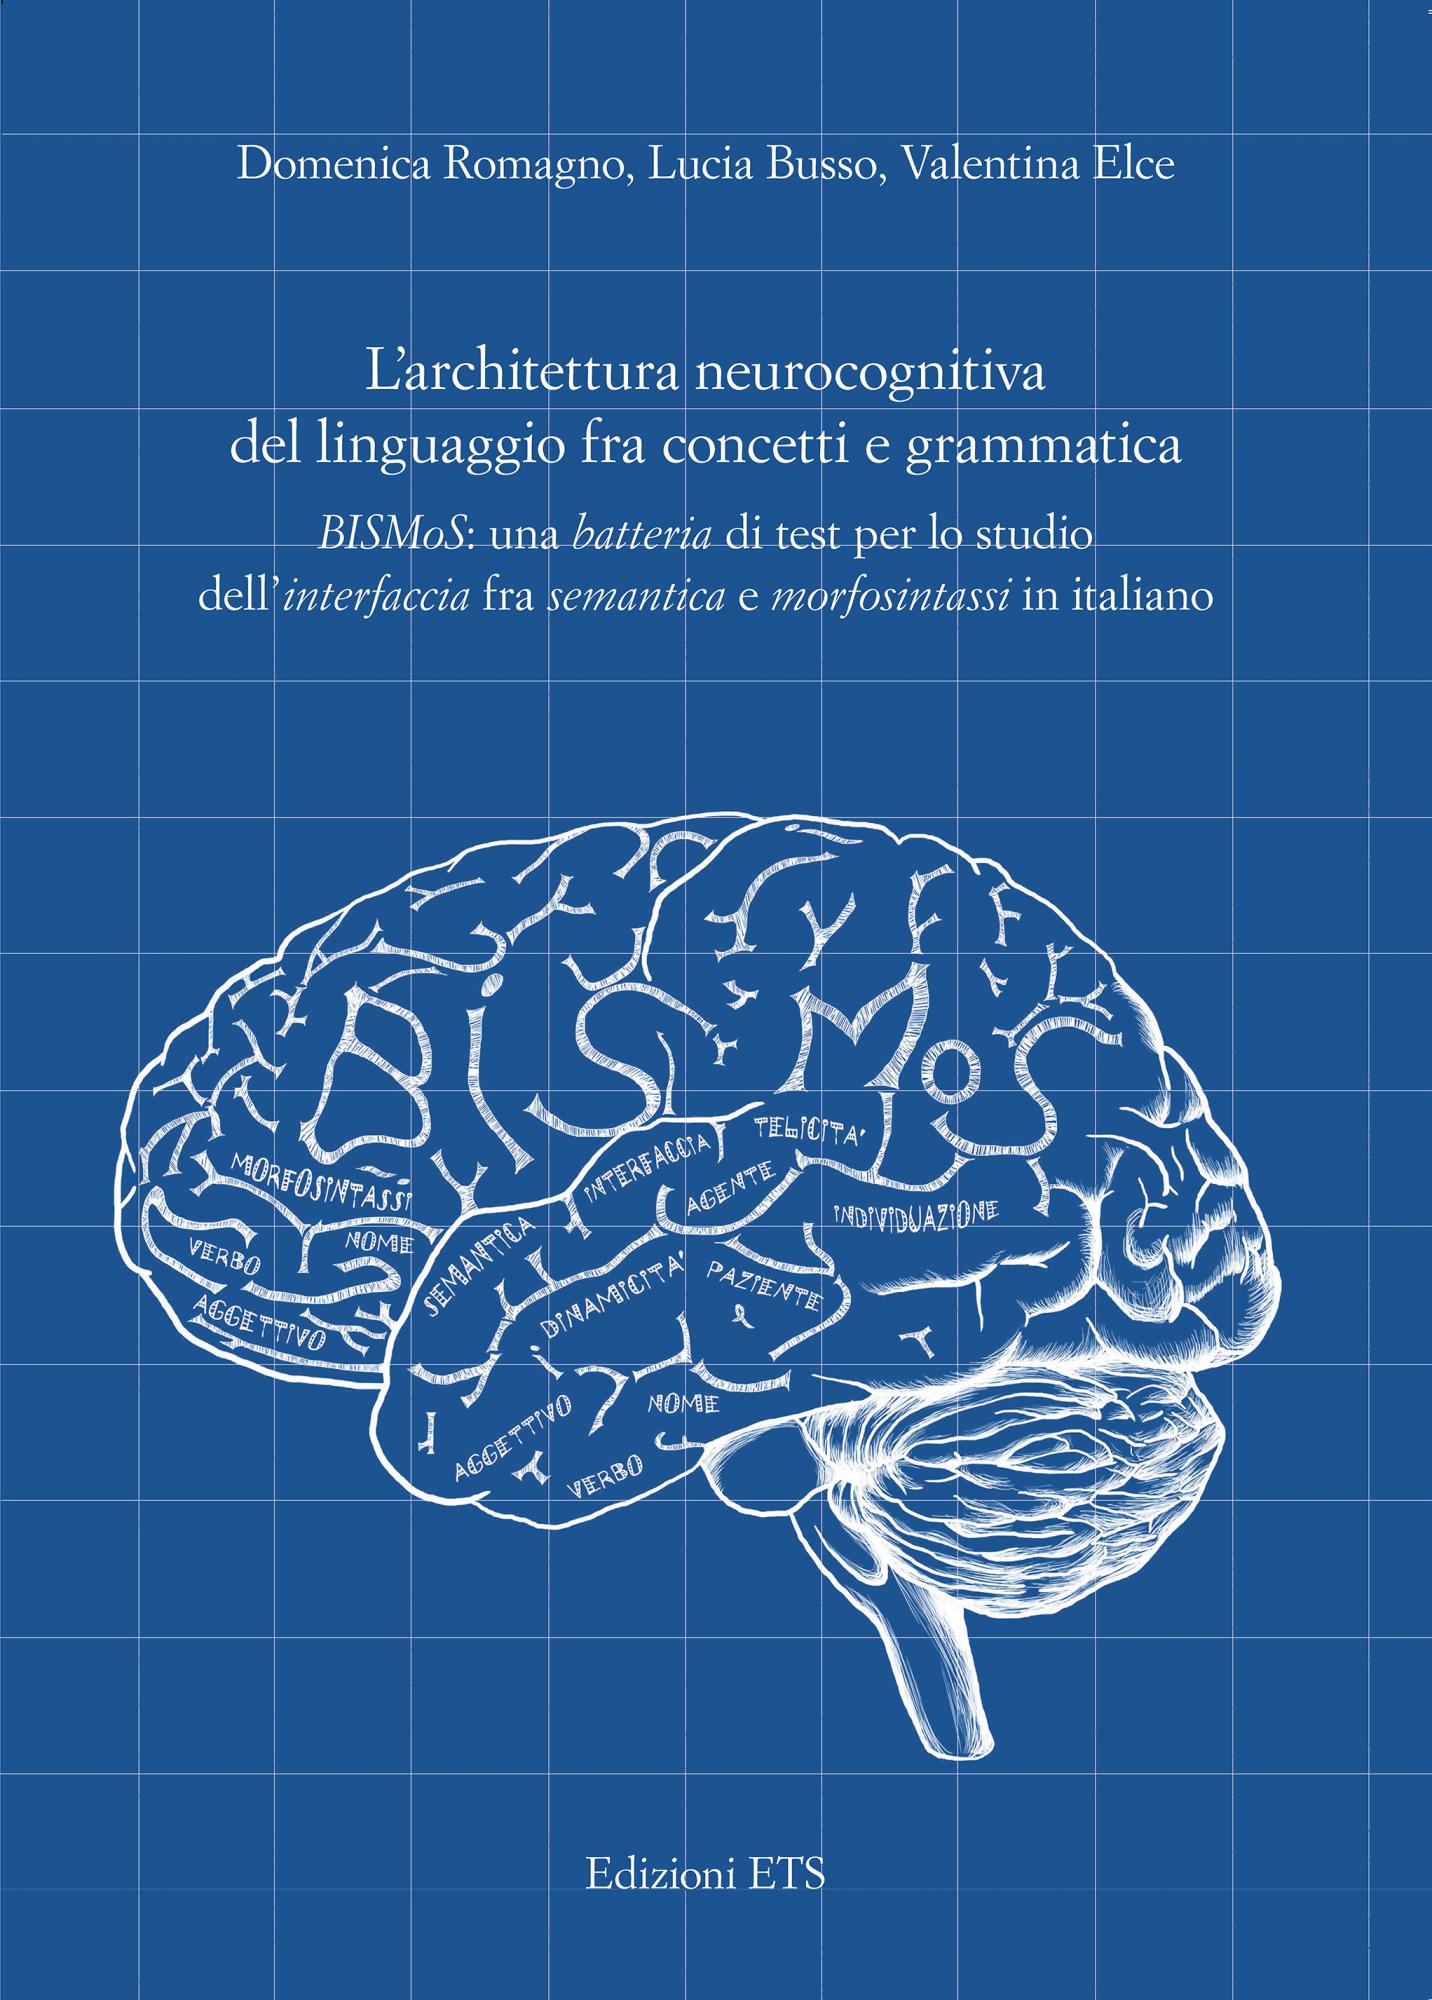 L’architettura neurocognitiva del linguaggio fra concetti e grammatica.BISMoS: una batteria di test per lo studio dell’interfaccia fra semantica e morfosintassi in italiano